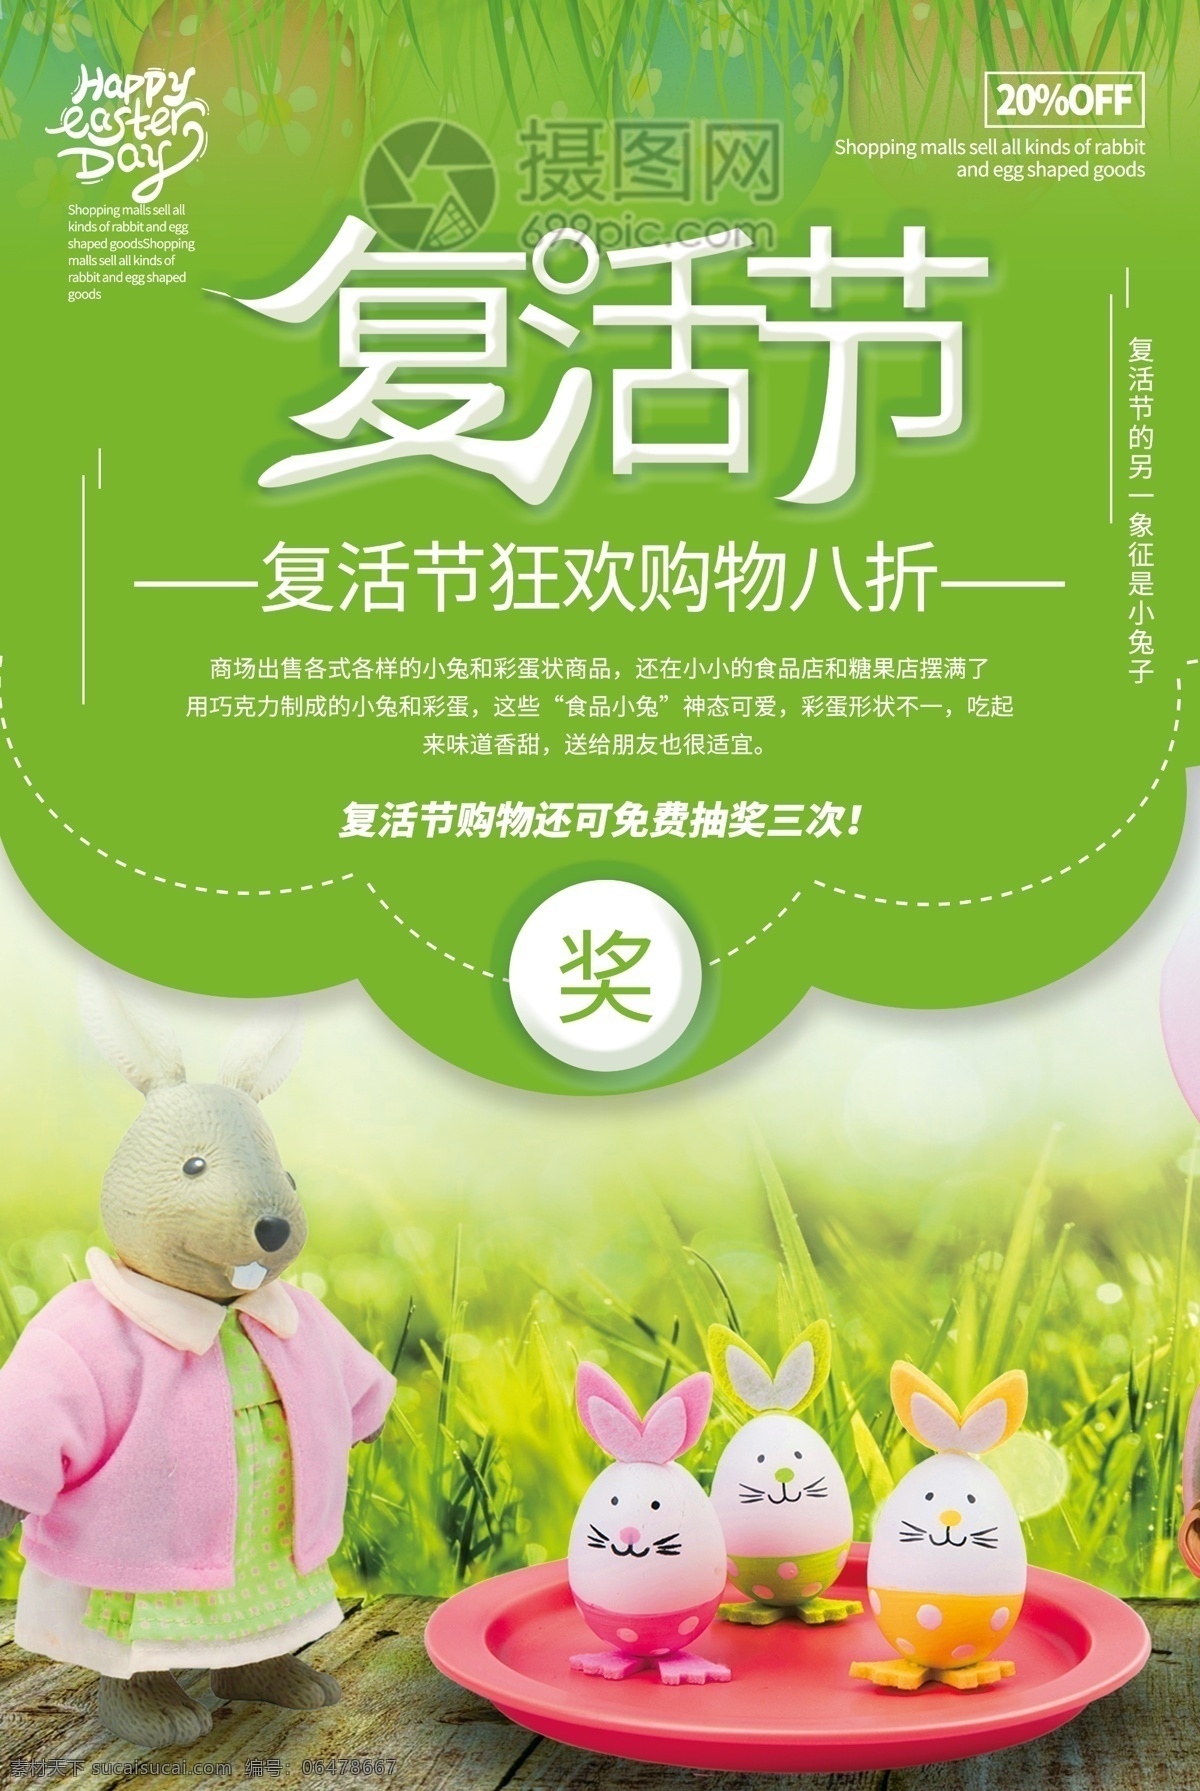 绿色 清新 剪纸风 复活节 象征 小兔子 彩蛋 节日 纪念 耶稣 复活 西方 促销 抽奖 搞活动 优惠 狂欢 购物 赠送 活动 海报